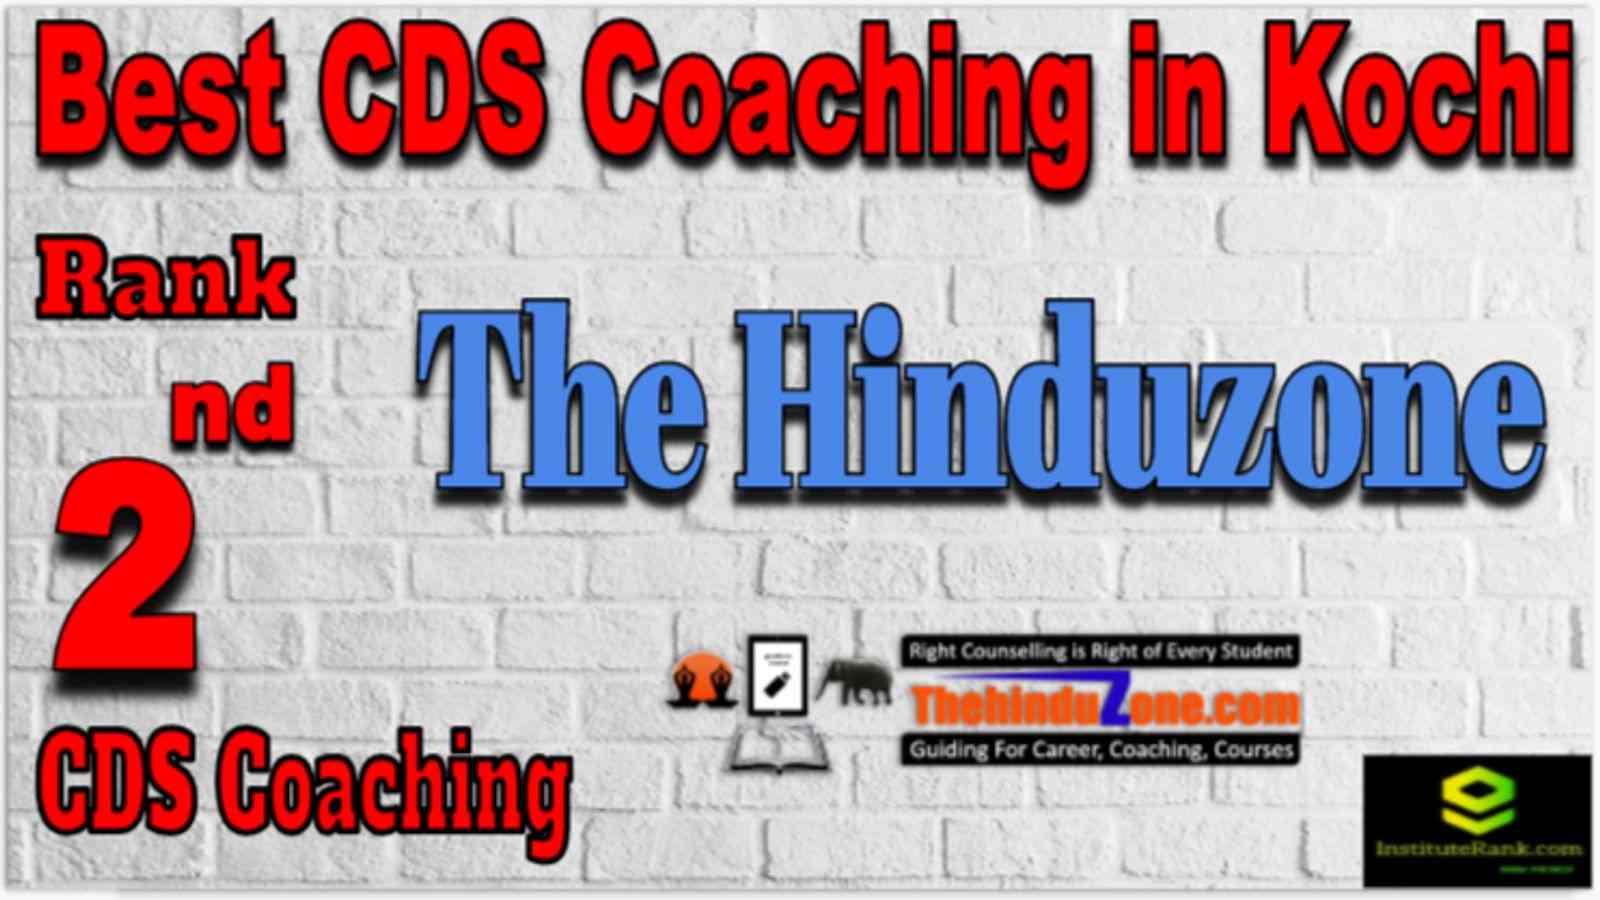 Rank 2 Best CDS Coaching in Kochi